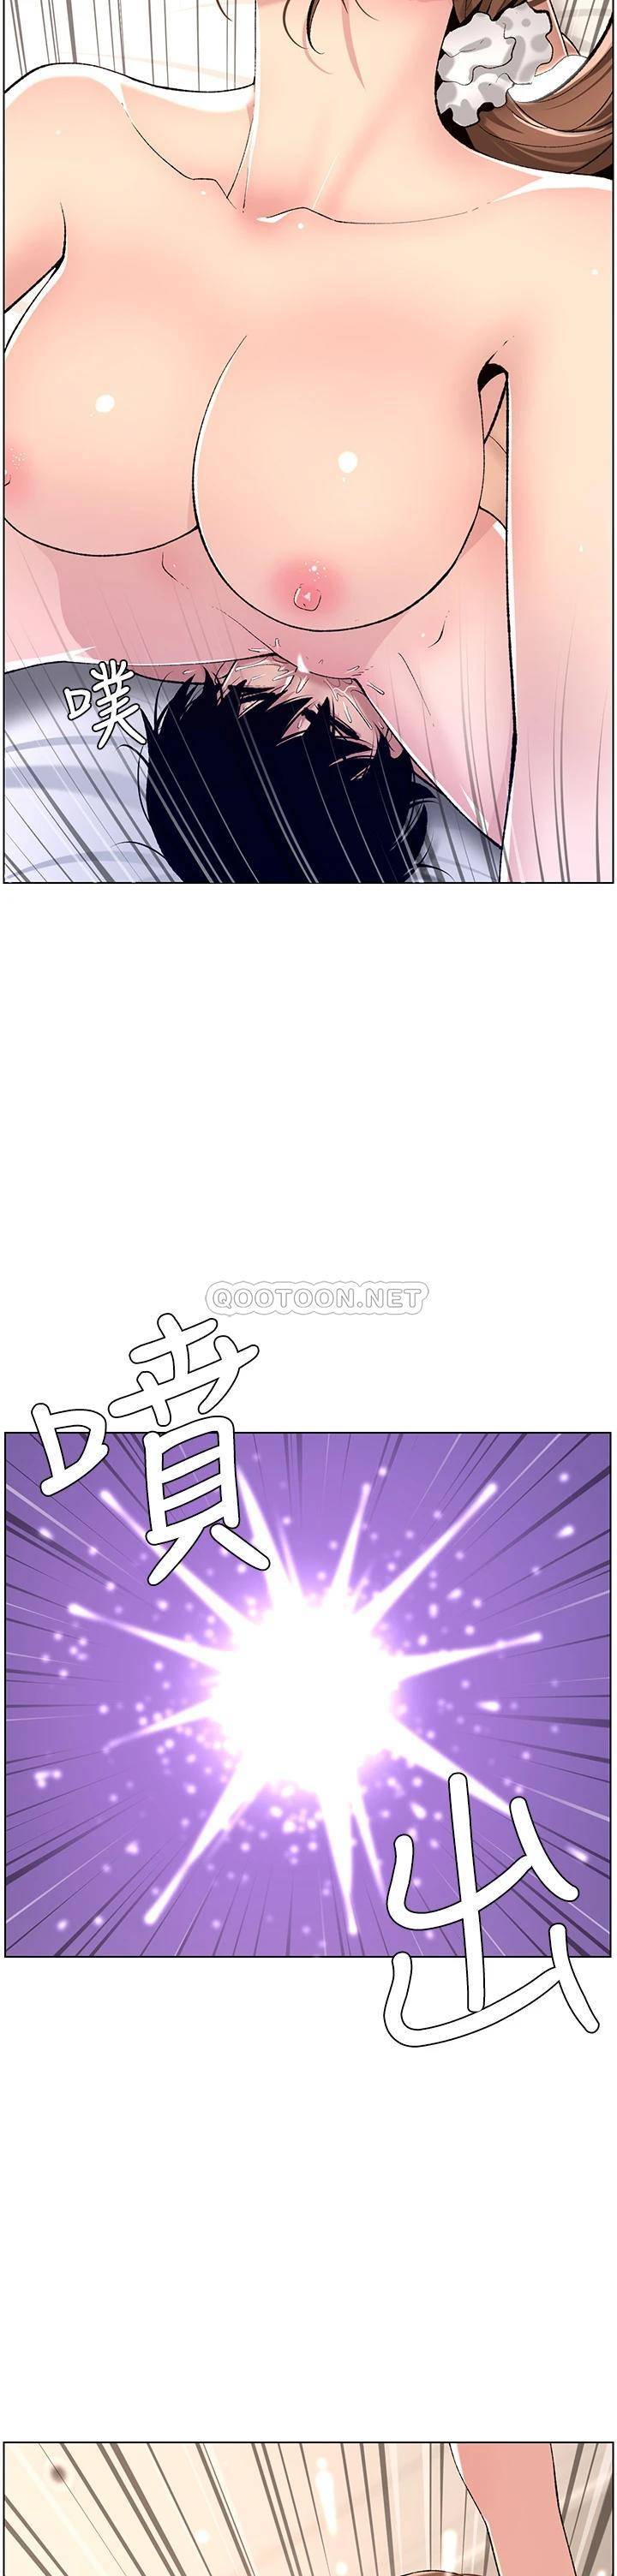 韩国污漫画 帝王App 第16话 你要当我的按摩棒吗? 2